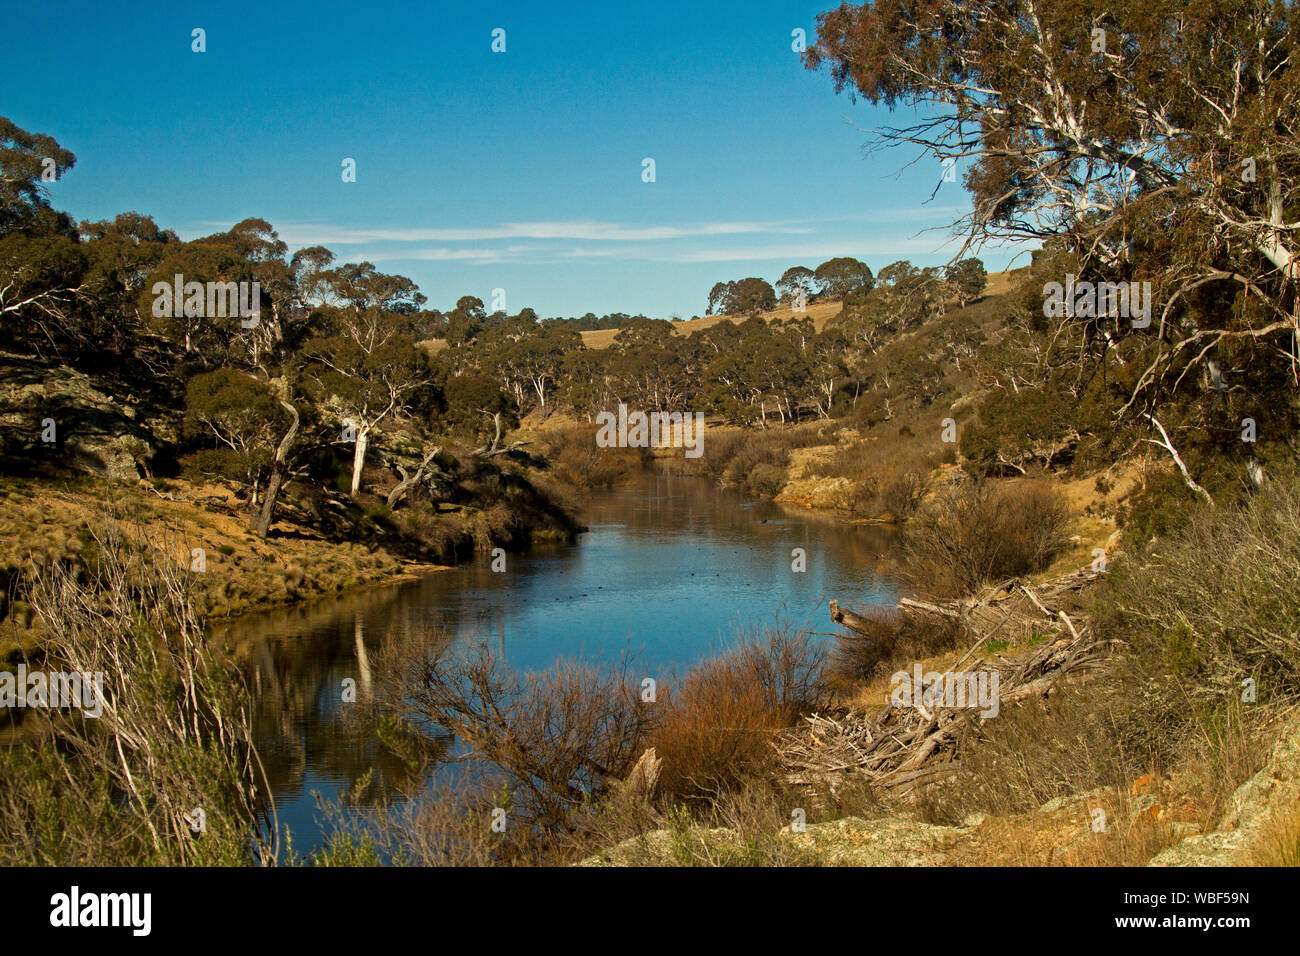 Paysage australien avec calme les eaux bleues de la rivière bordée de collines Bombala enveloppée avec de la gomme des arbres et des graminées d'or sous ciel bleu dans le NSW Banque D'Images